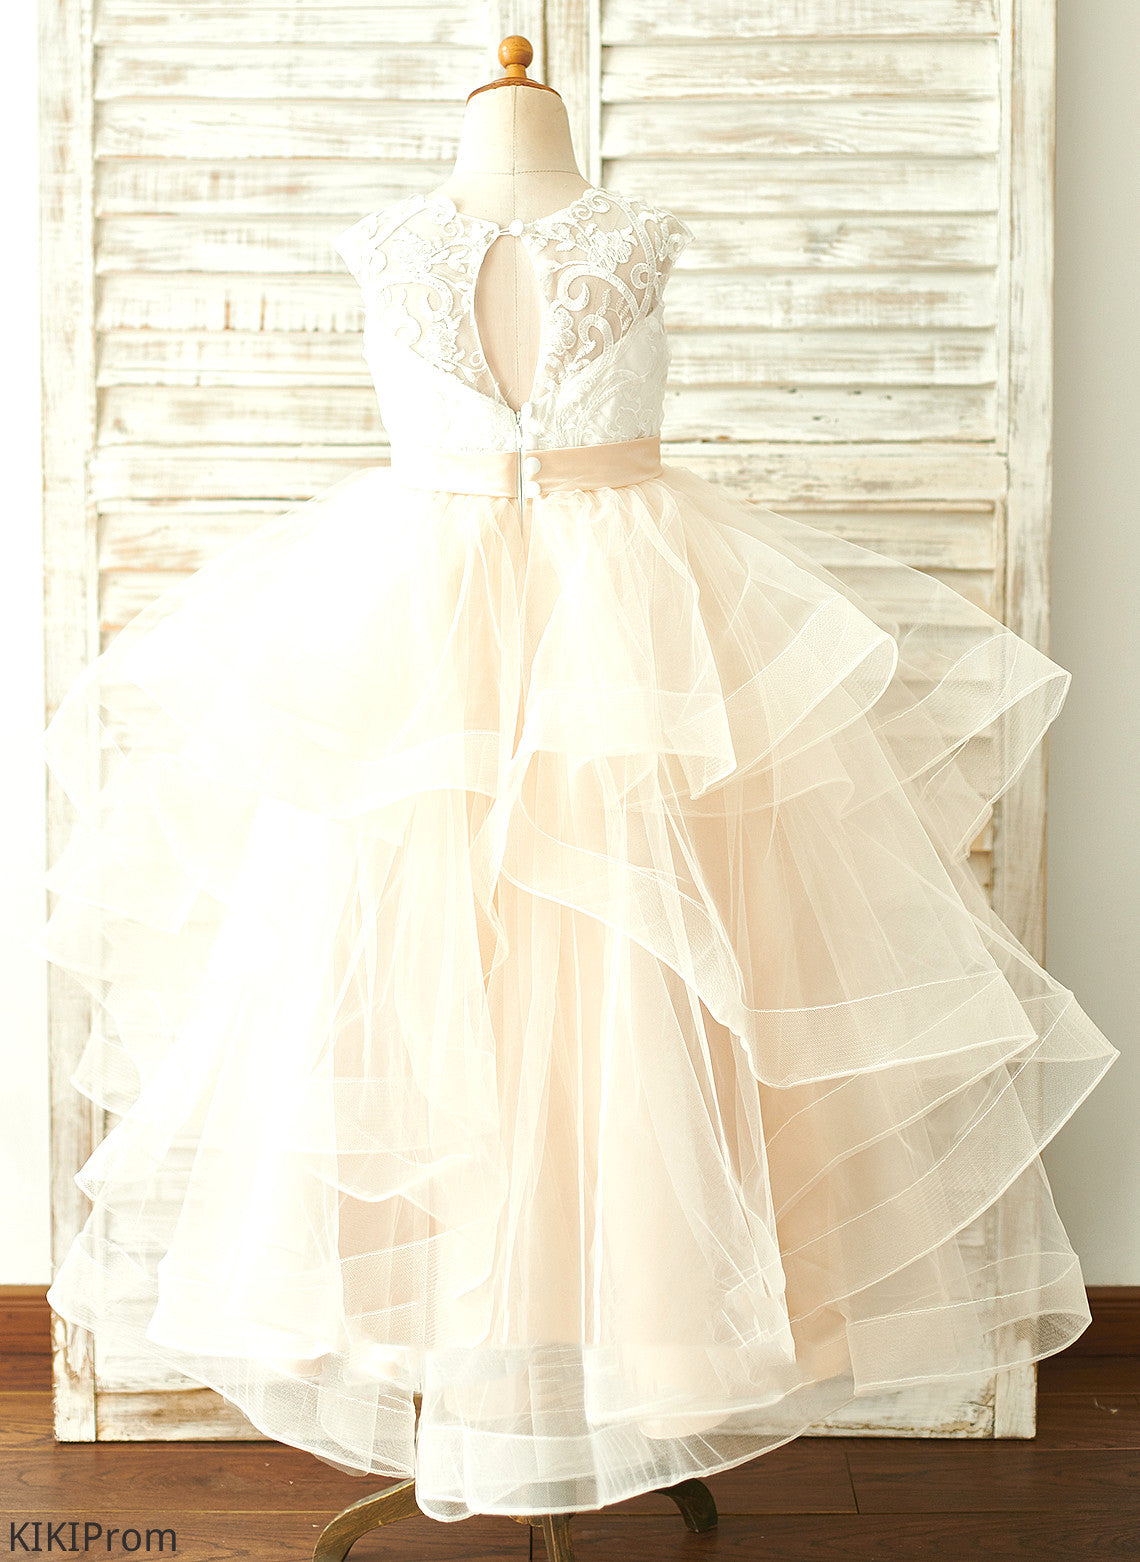 Donna - Dress Girl Neck Sleeveless Floor-length Flower Tulle/Lace Ball-Gown/Princess Flower Girl Dresses Scoop